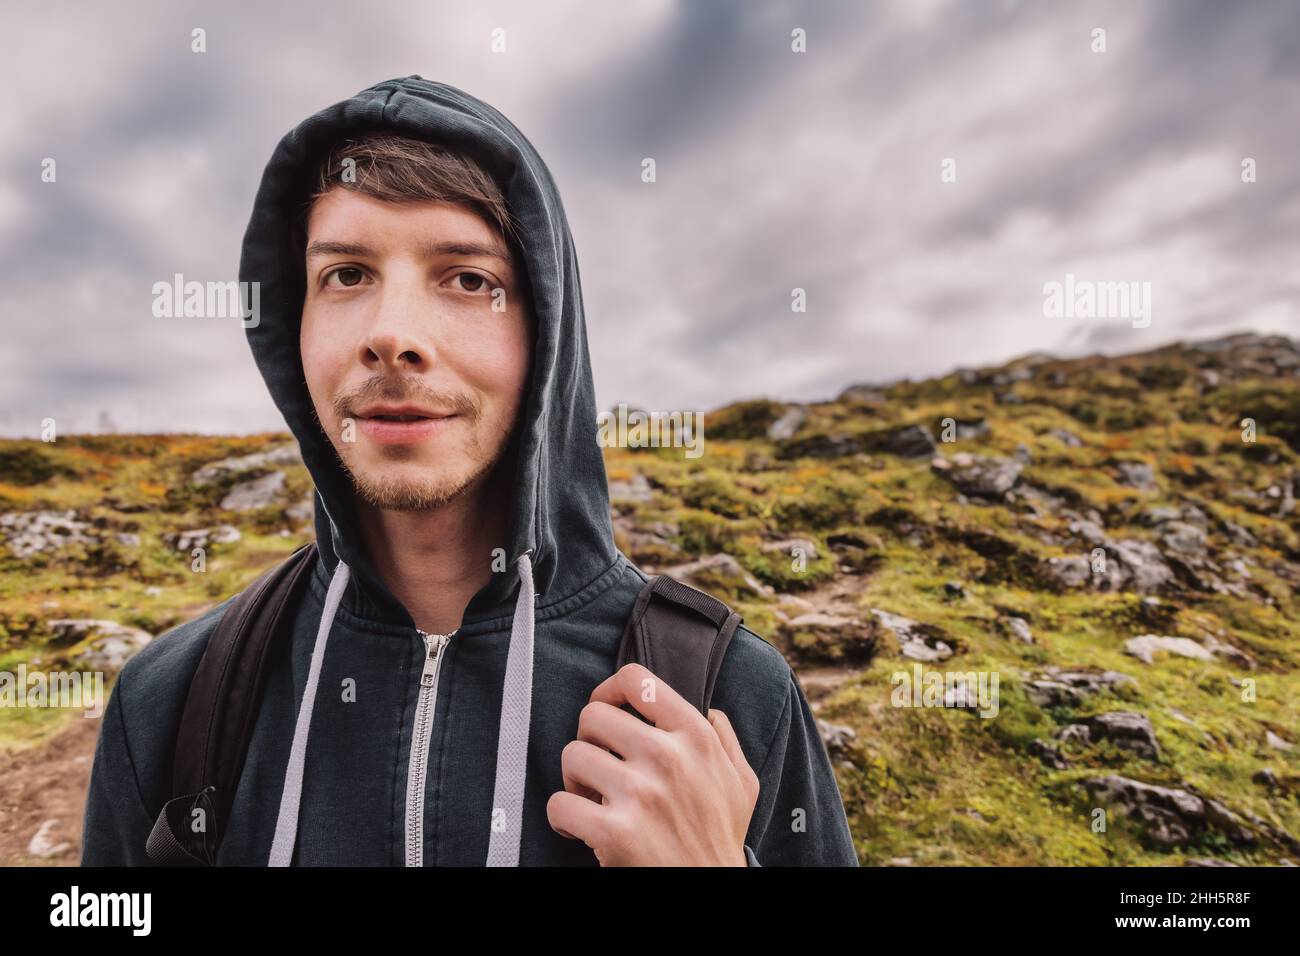 Jeune homme adulte avec des cheveux bruns et la barbe randonnée au sommet d'une montagne, portant un sac à dos, regardant l'appareil photo, automne, volda,norvège Banque D'Images